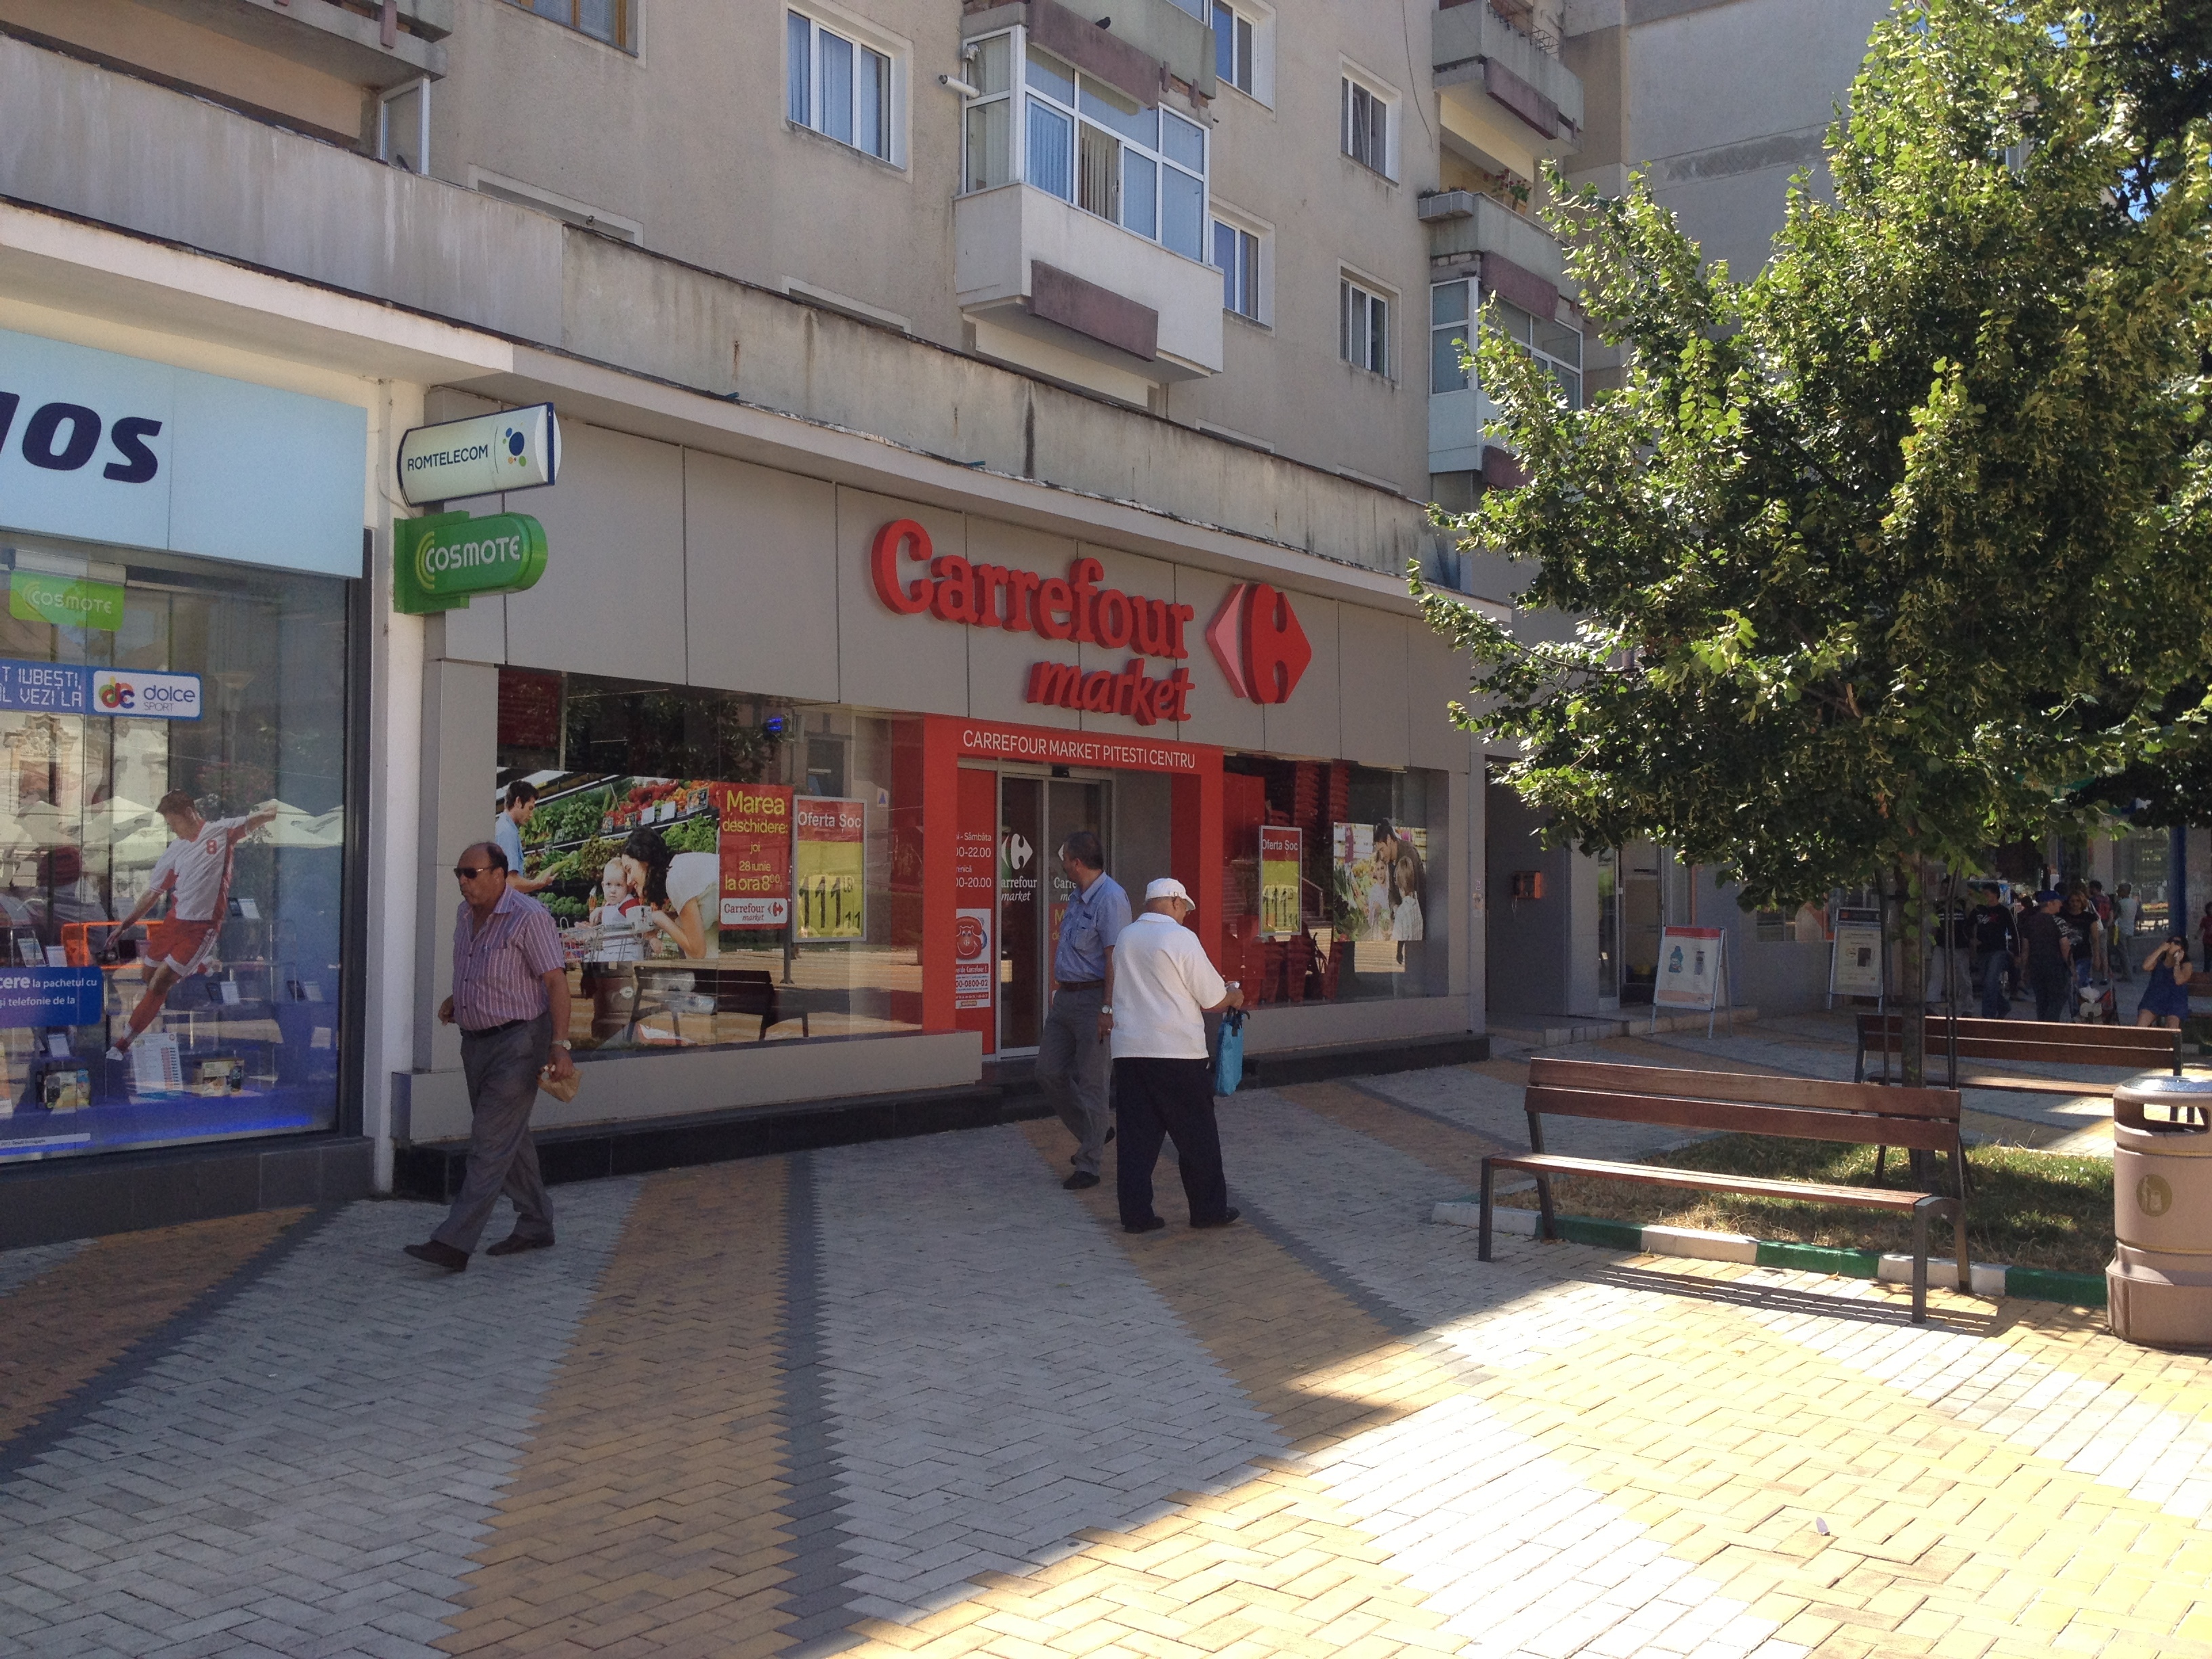 Sedative I need fascism Carrefour deschide al 53-lea supermarket, la Piteşti